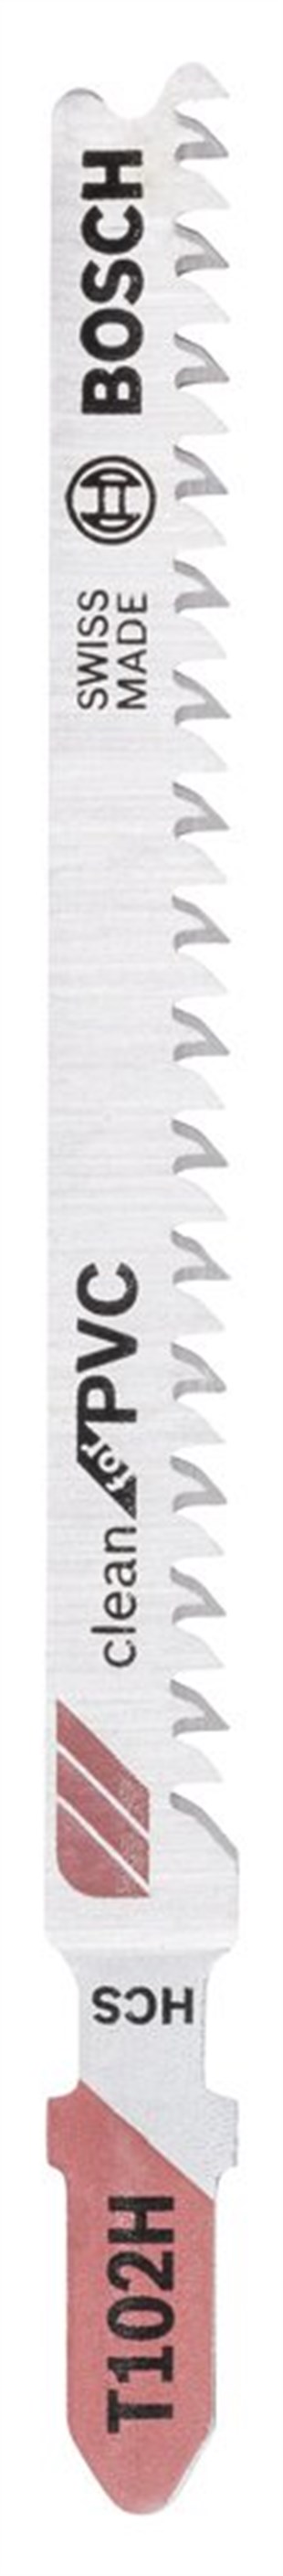 Bosch - Temiz Kesim Serisi PVC İçin T 102 H Dekupaj Testeresi Bıçağı - 5Li Paket